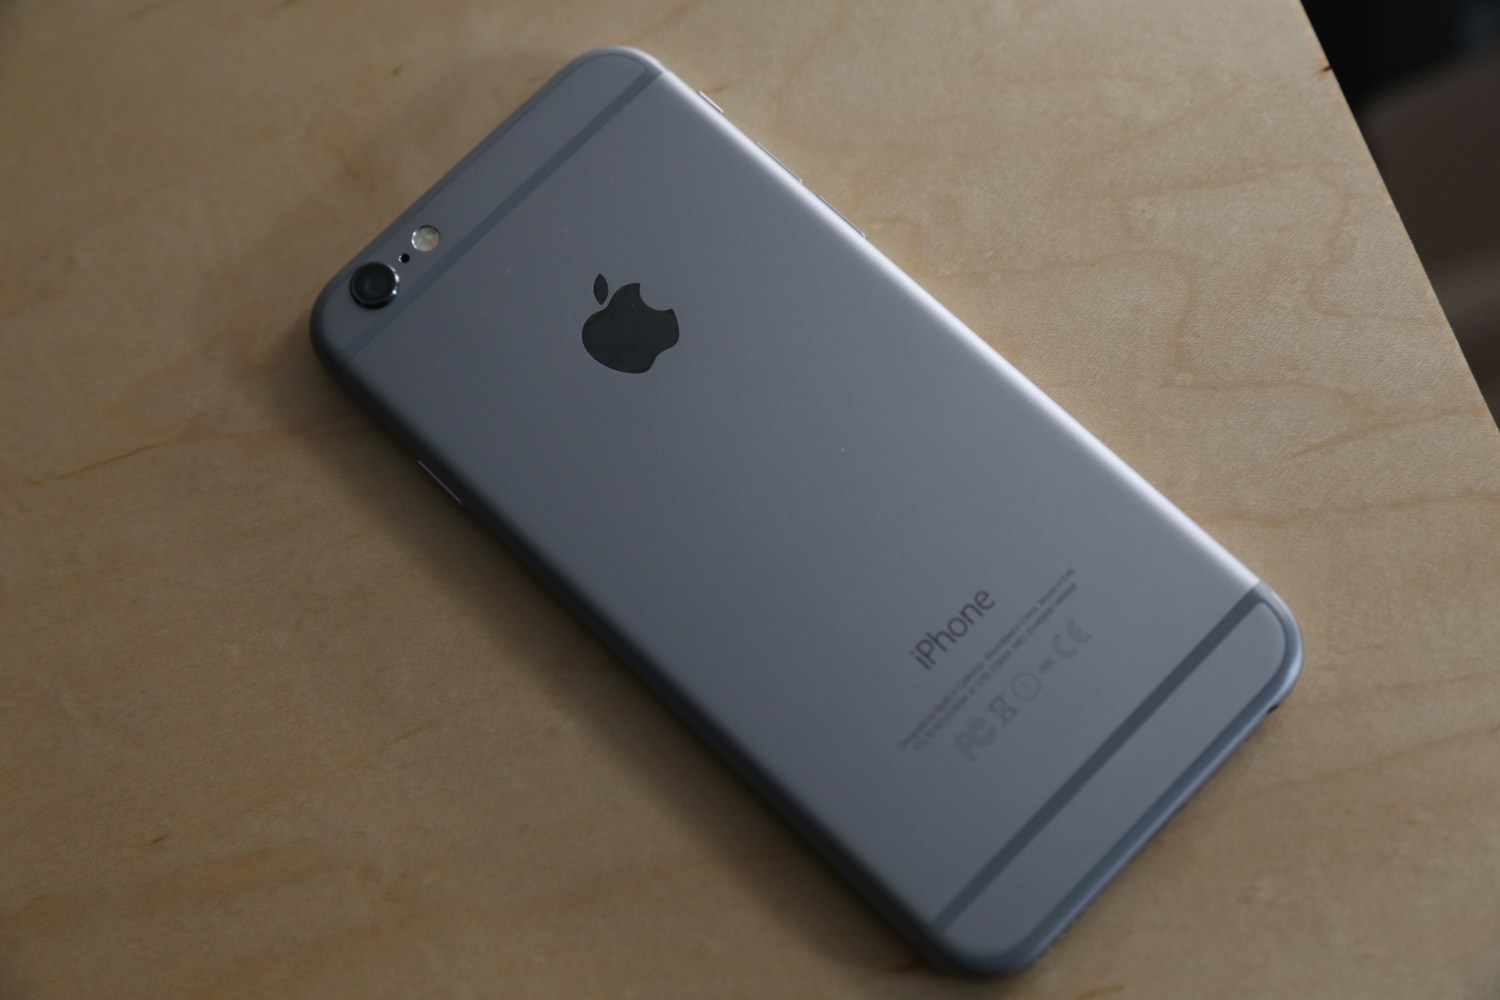 iPhone 6 Review: Meet The New Best Smartphone | TechCrunch